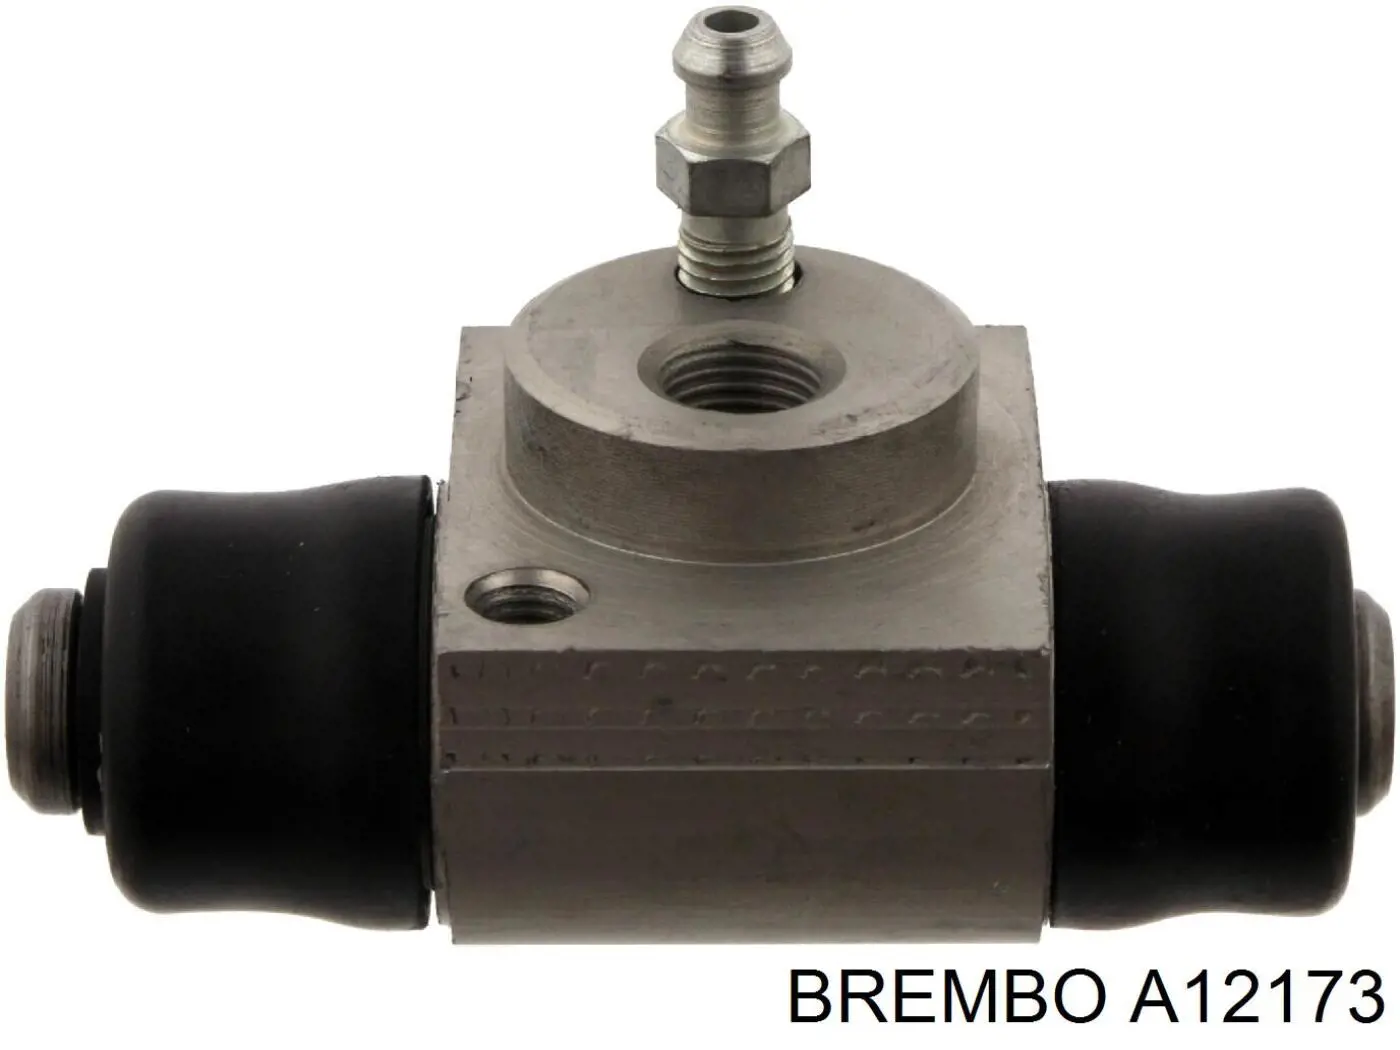 A12173 Brembo cilindro de freno de rueda trasero